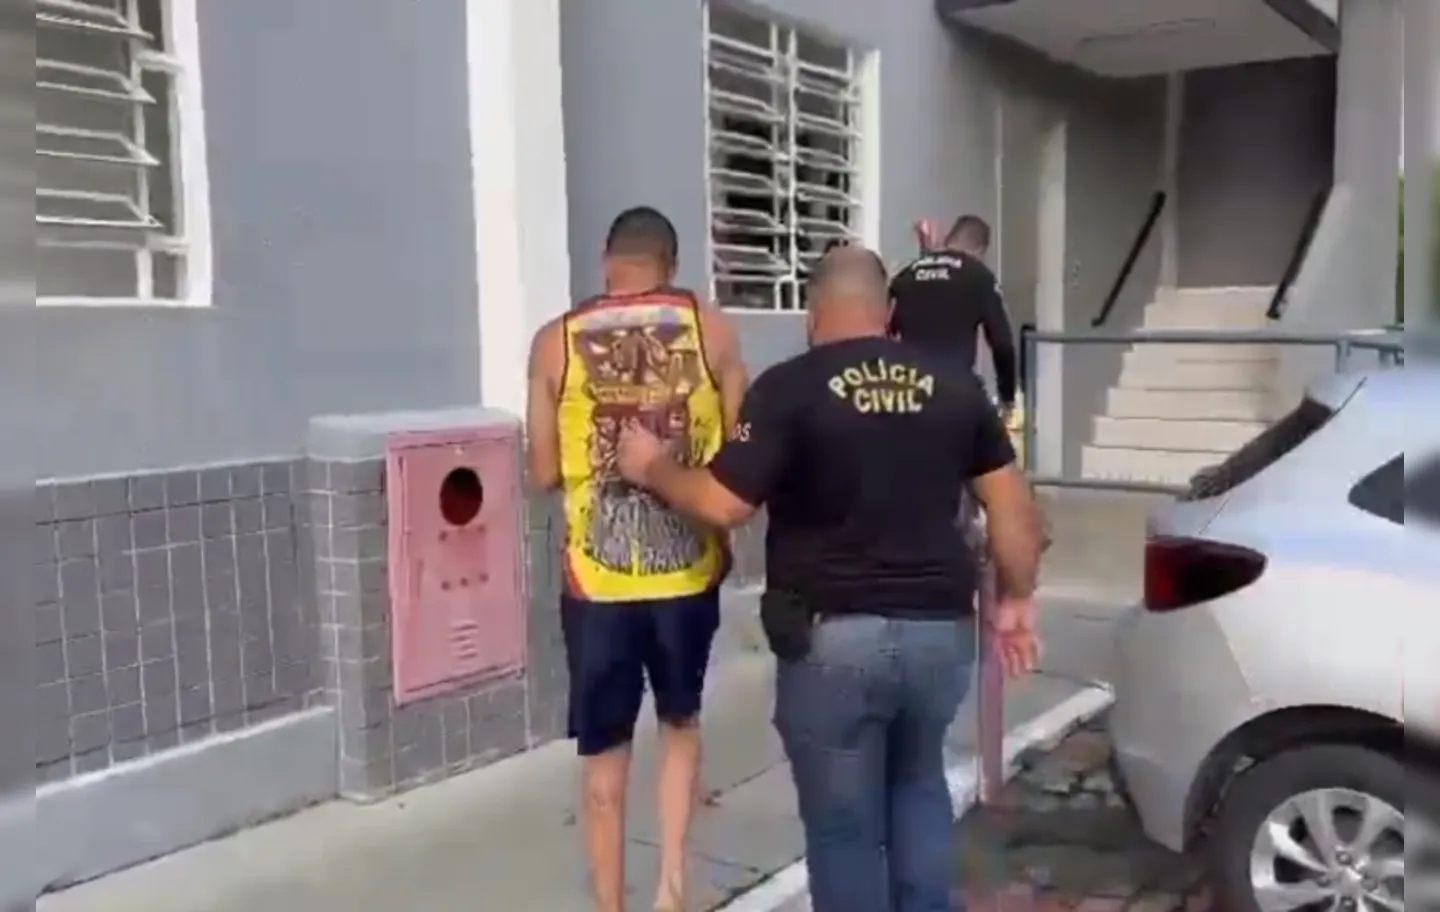 Um dos presos estava usando camisa de torcida organizada